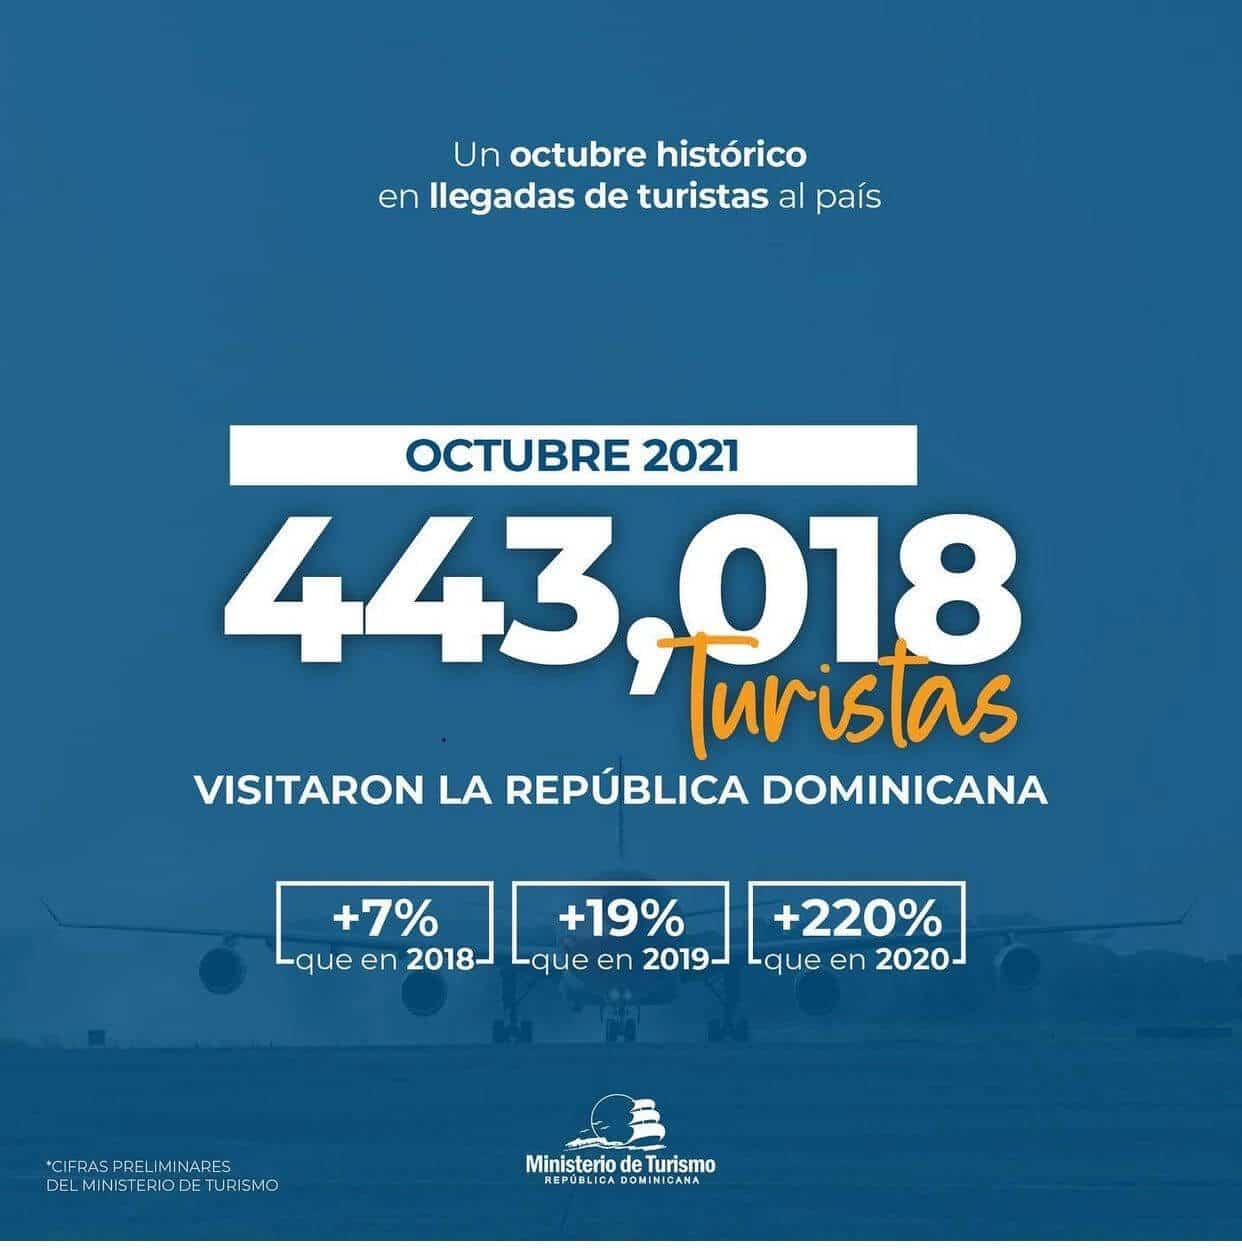 Исторический октябрь в потоках туристов в Доминиканскую республику